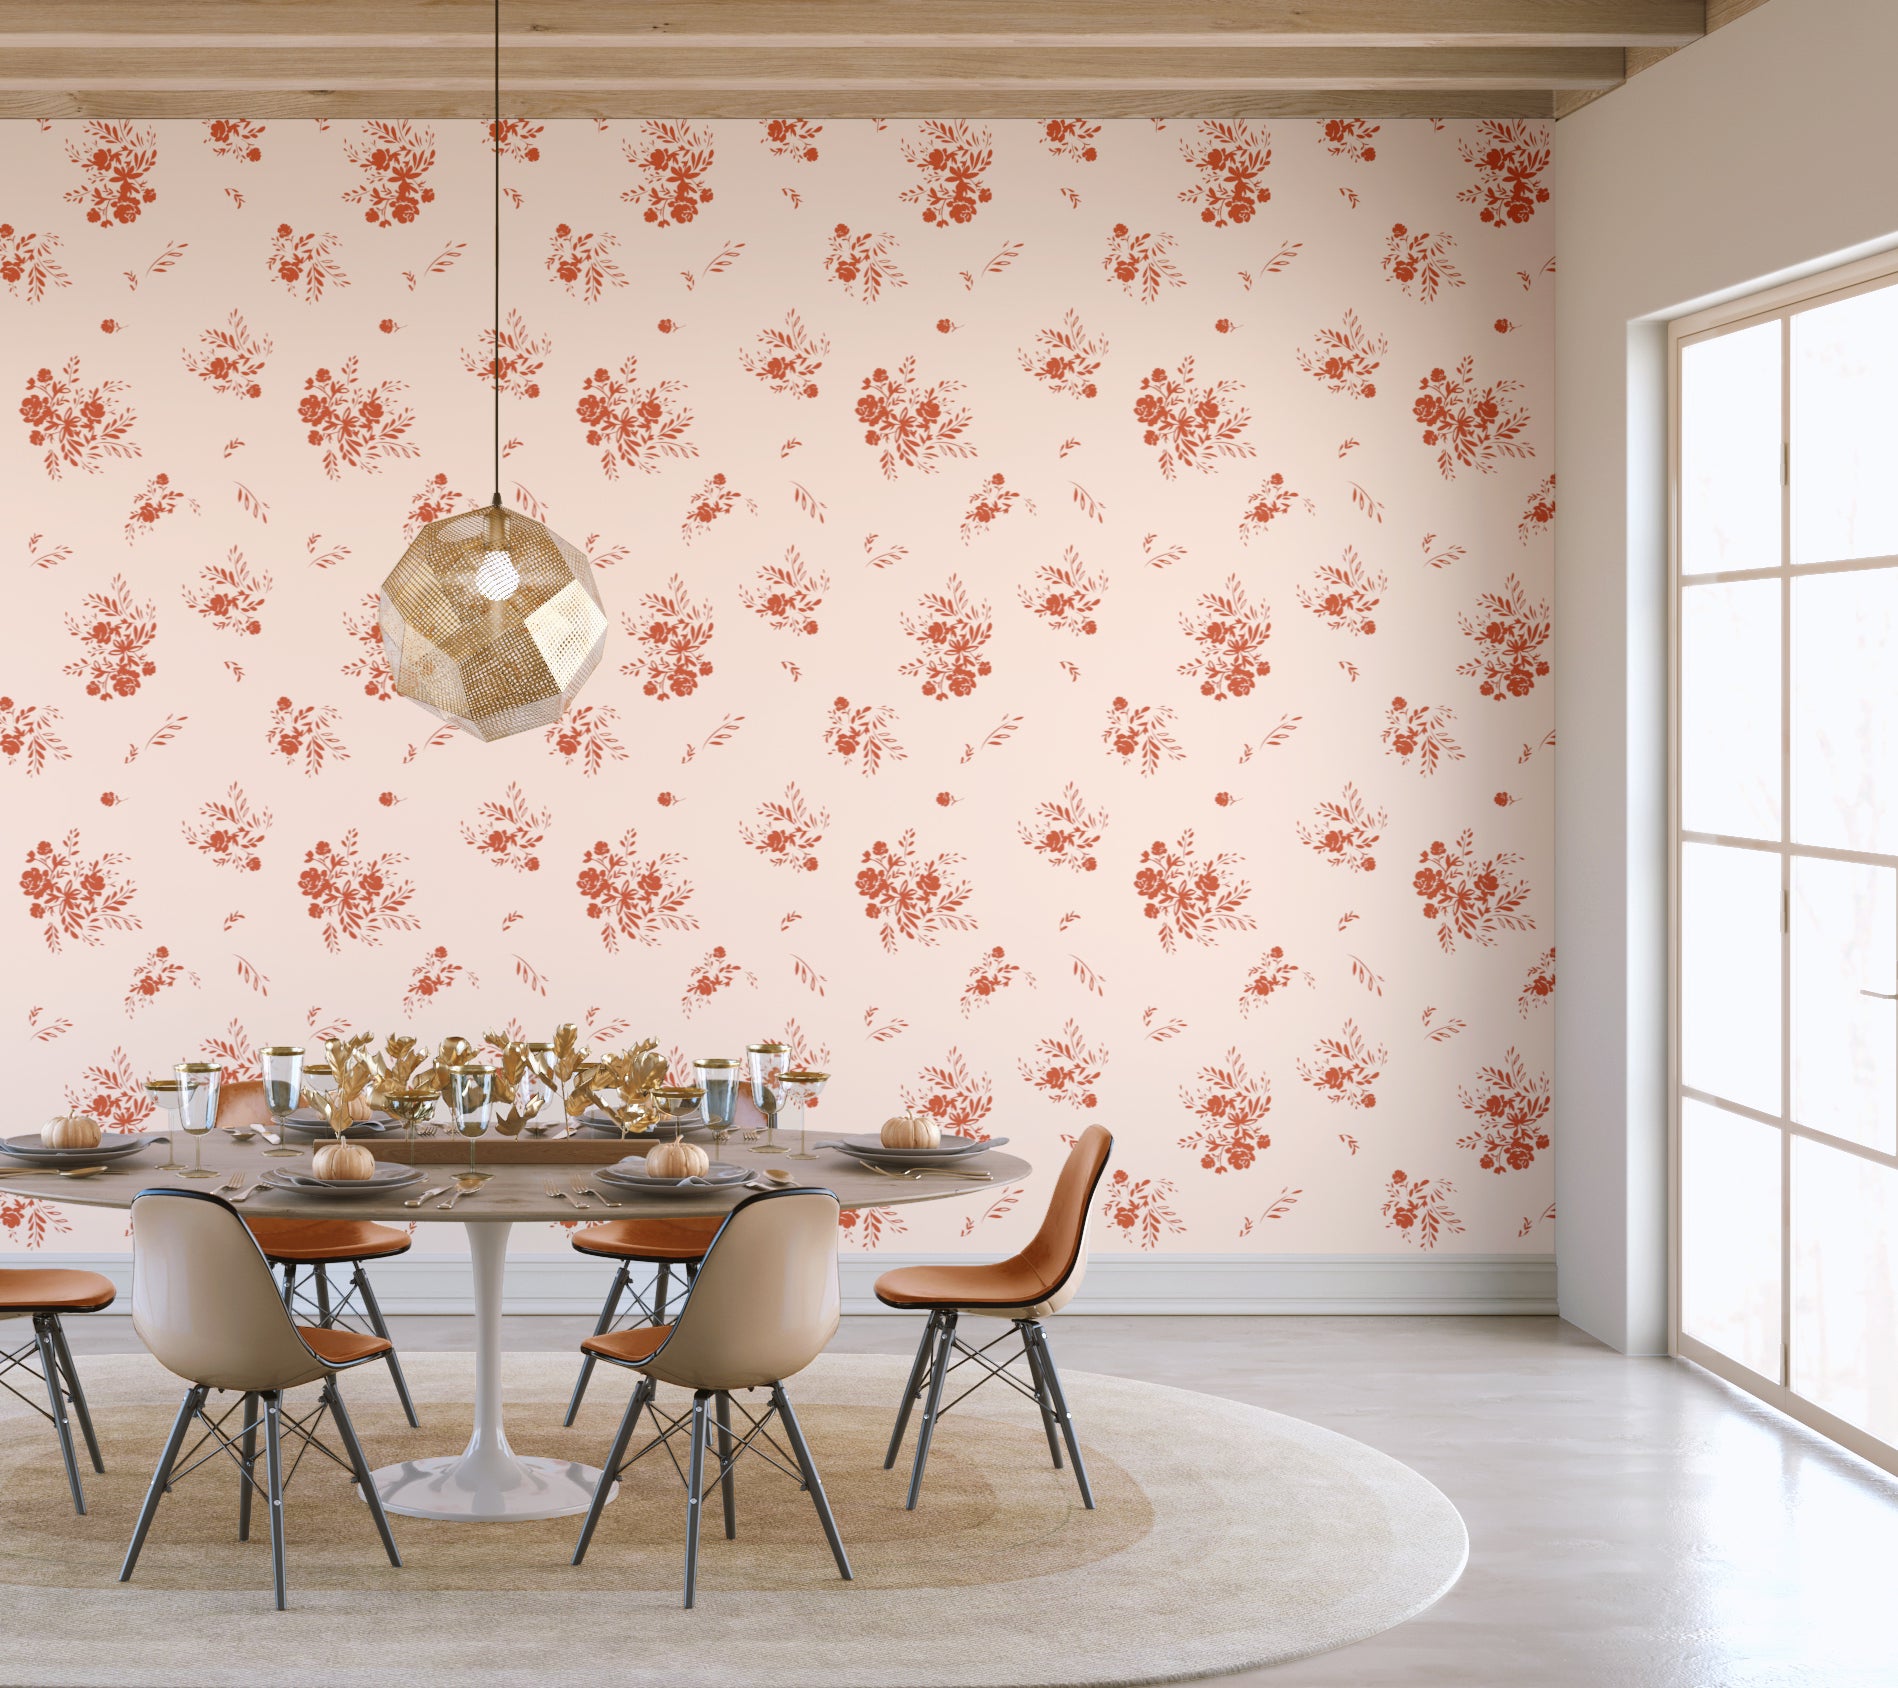 Bloom© Wallpaper in Rust